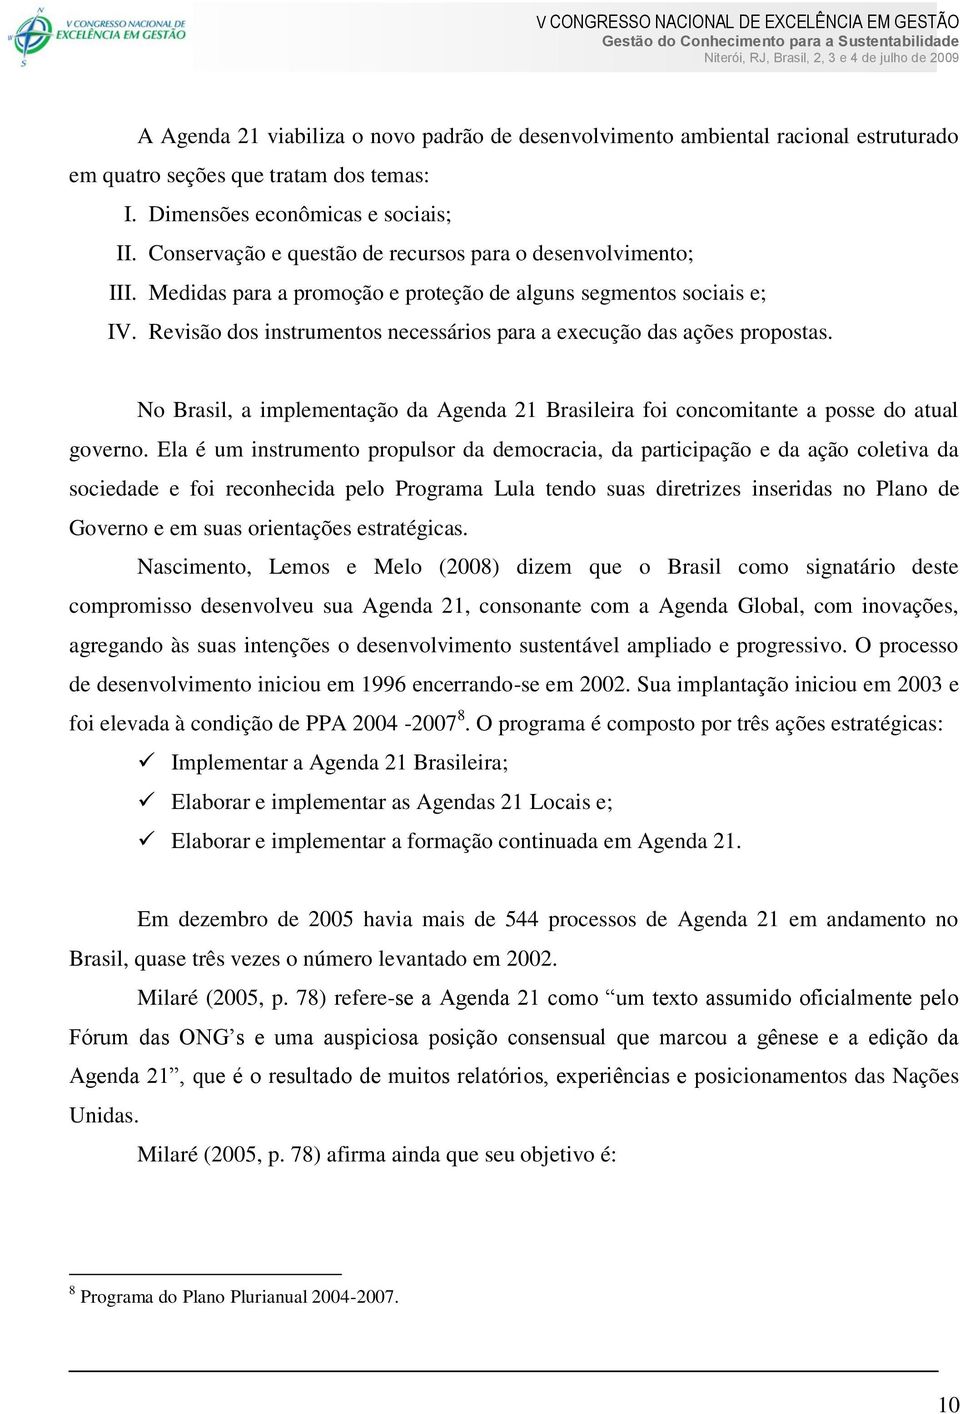 Revisão dos instrumentos necessários para a execução das ações propostas. No Brasil, a implementação da Agenda 21 Brasileira foi concomitante a posse do atual governo.